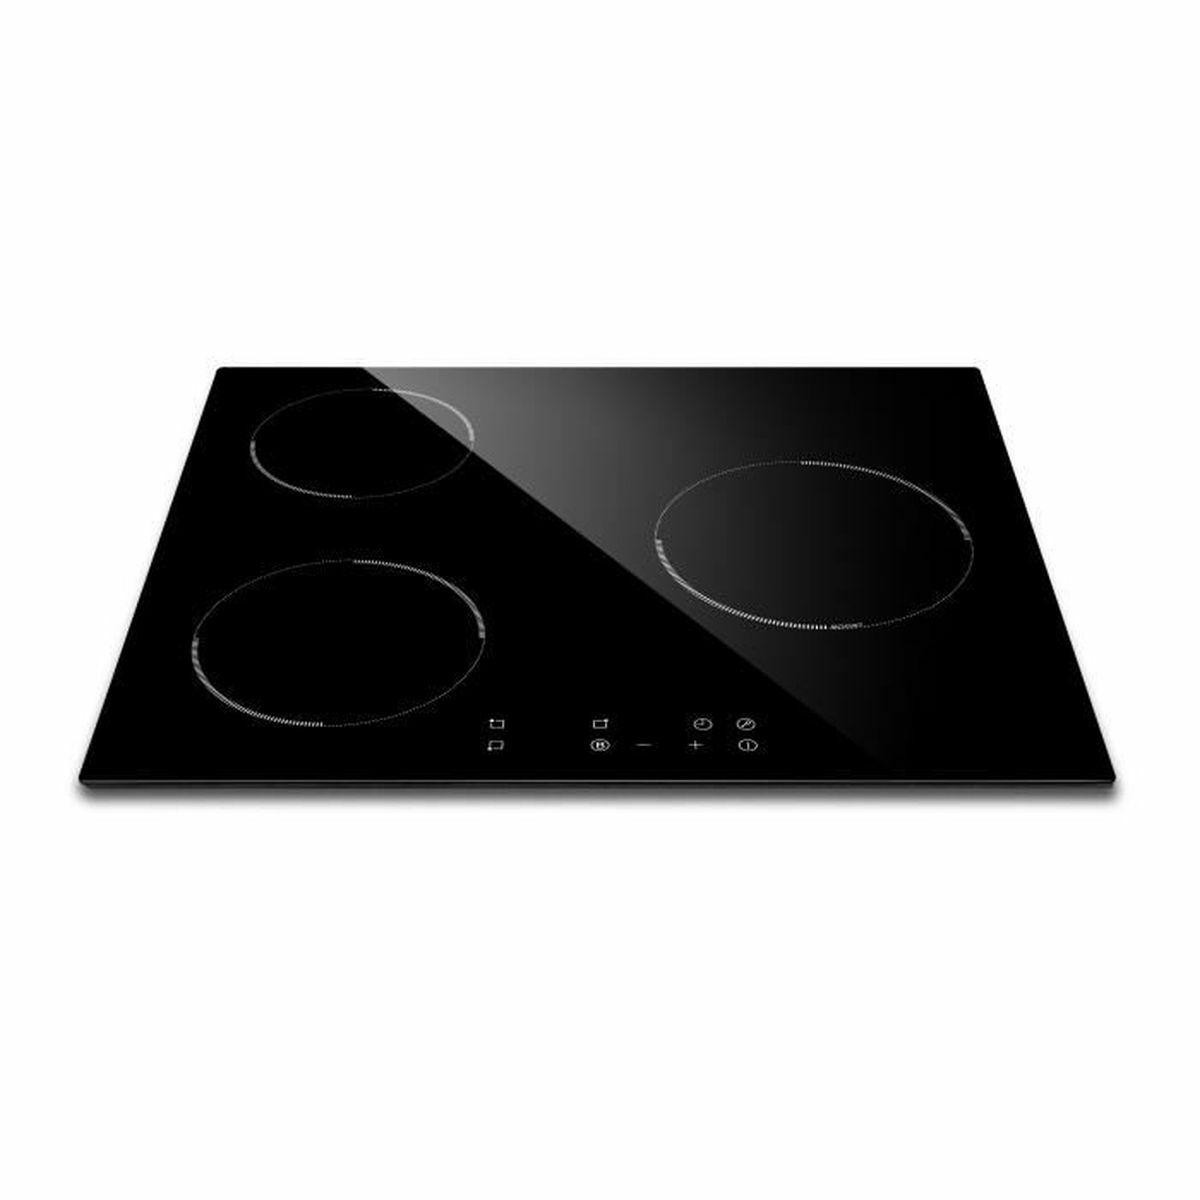 AMSTA – AMPI3Z5000 – Plaque de cuisson induction – 3 foyers – 60 cm – 4800 watts – Commandes sensitives – Noir